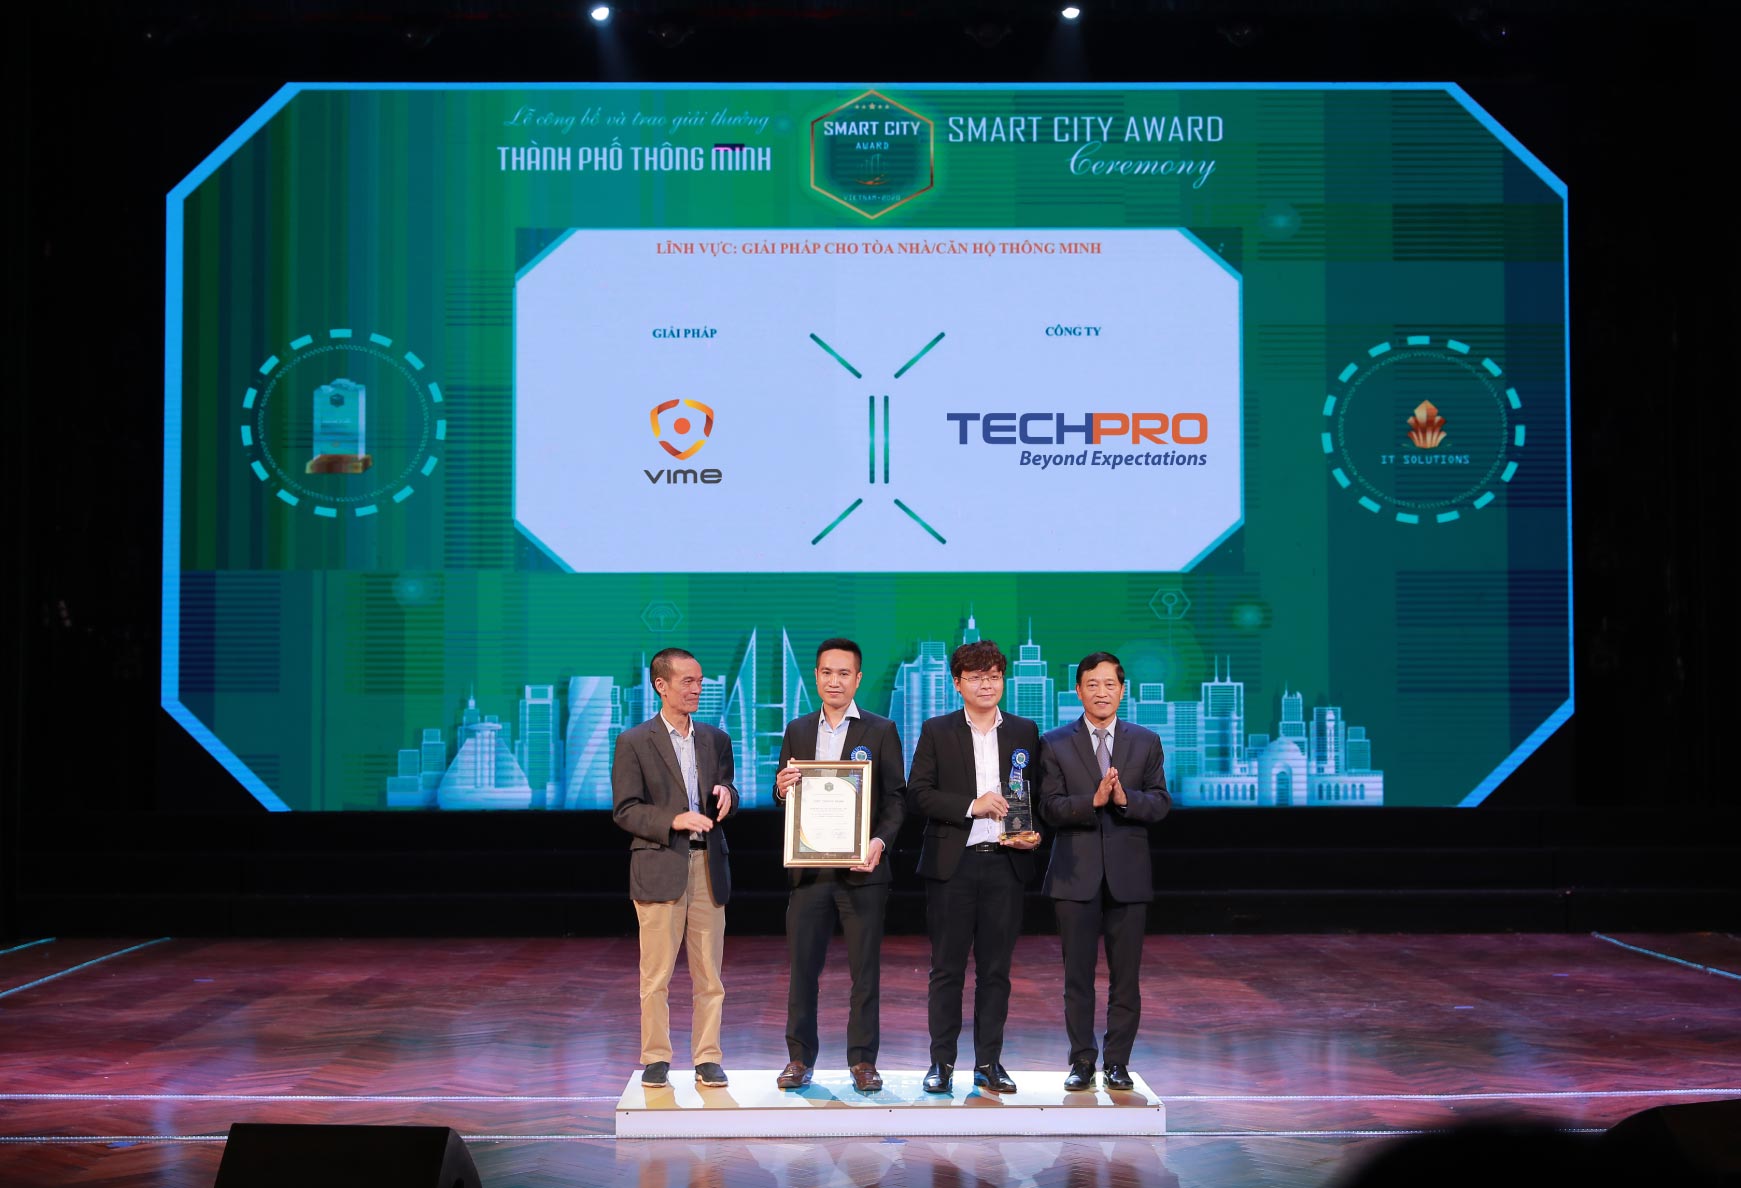 Giải pháp quản lý sảnh thông minh - VIME của TECHPRO nhận Giải thưởng thành phố thông minh Việt Nam - Vietnam Smartcity Award 2020